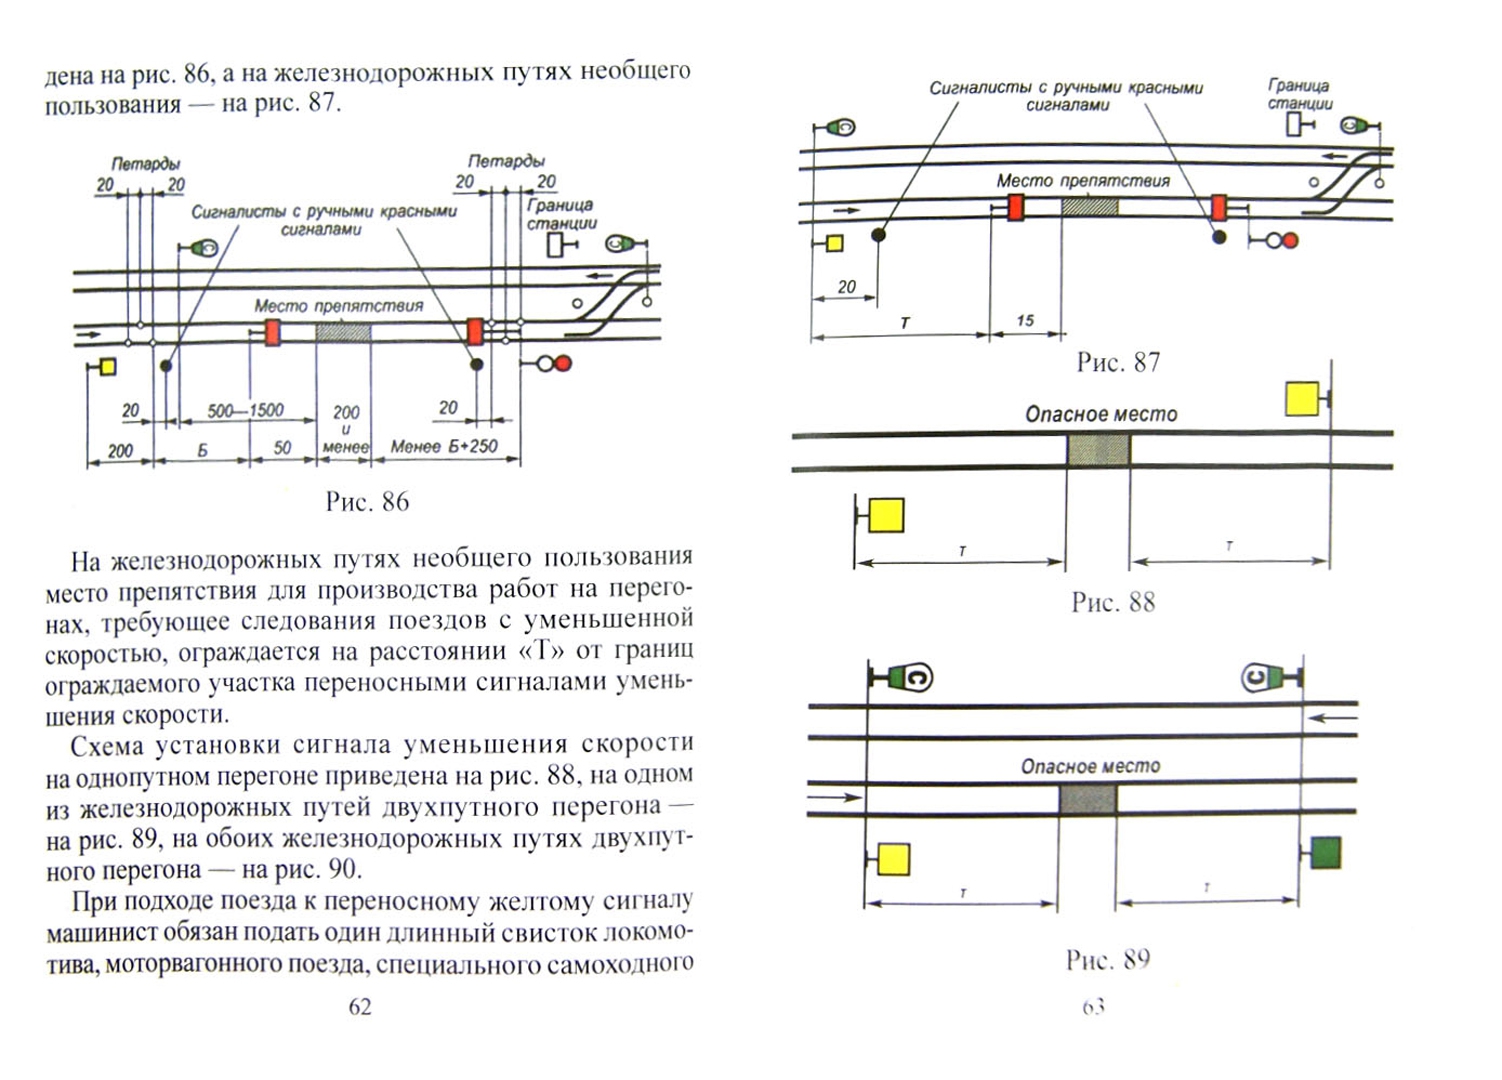 Иллюстрация 2 из 10 для Инструкция по сигнализации на железнодорожном транспорте Российской Федерации | Лабиринт - книги. Источник: Лабиринт